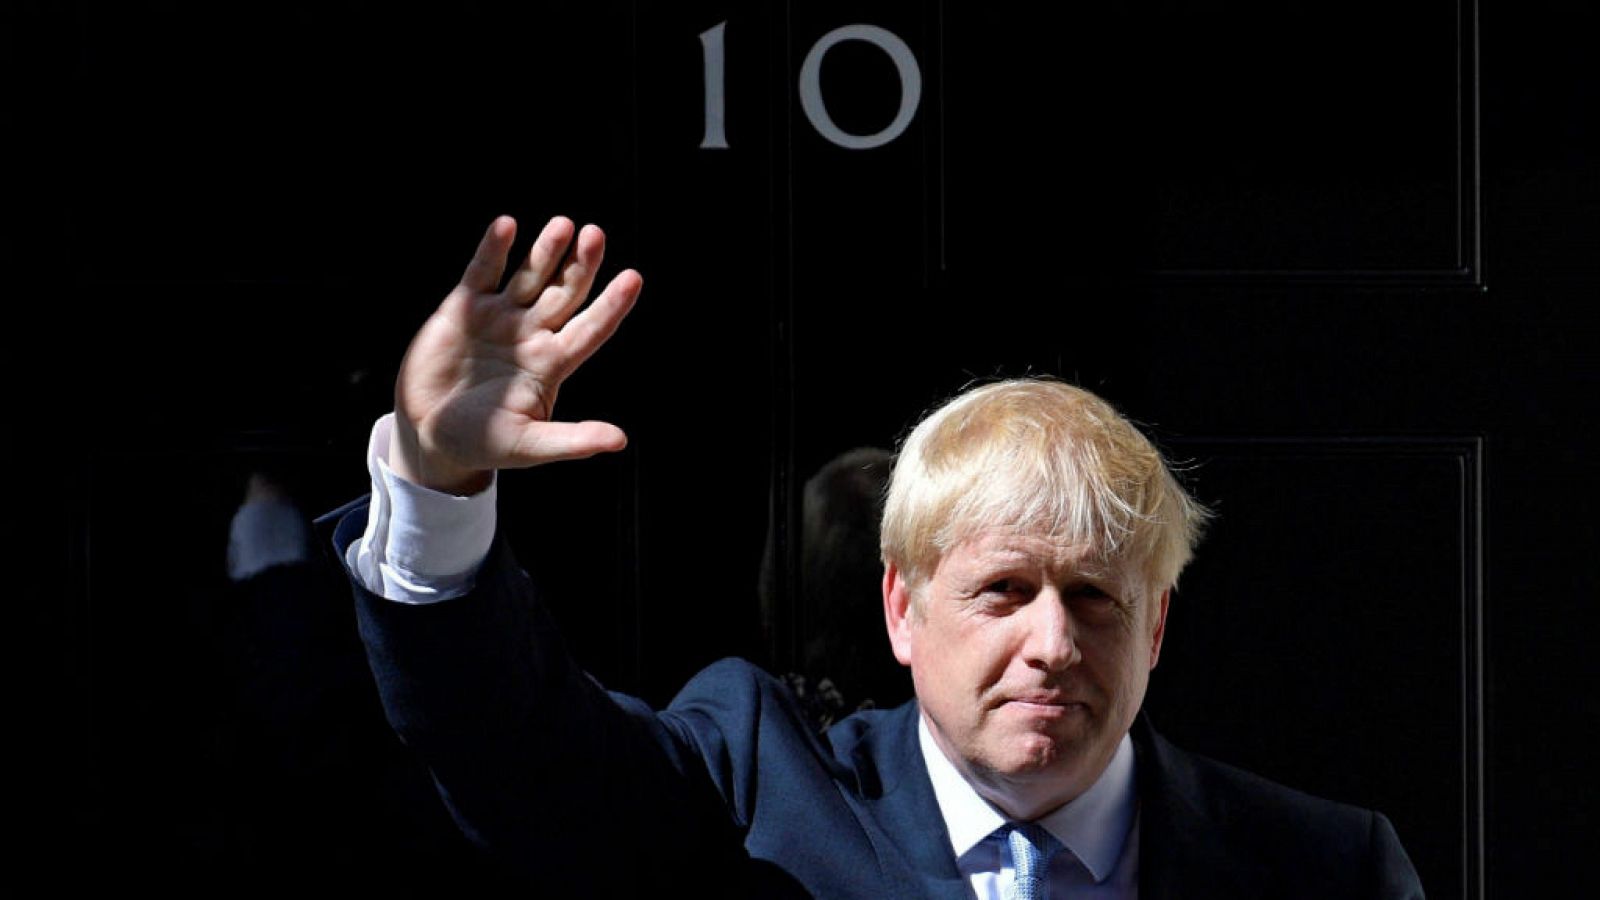  Boletines RNE - La reina acepta la petición de Boris Johnson para suspender el Parlamento - Escuchar ahora 